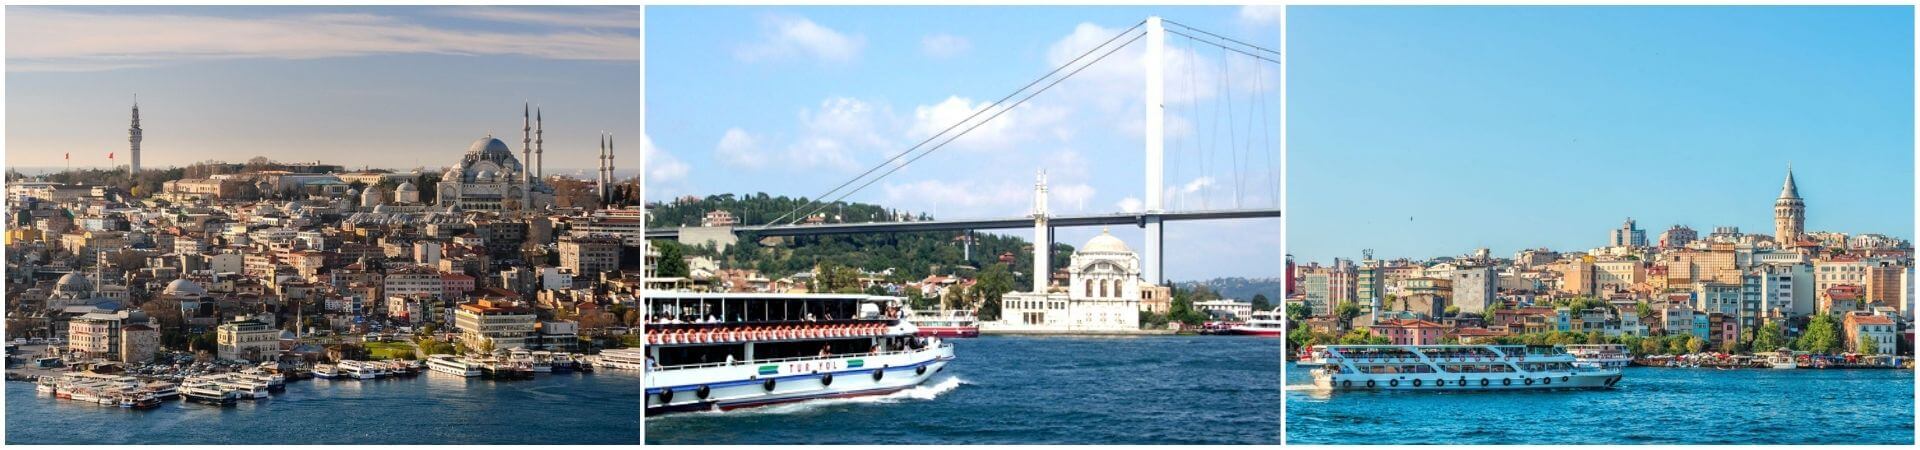 Crucero por el Bósforo en Estambul